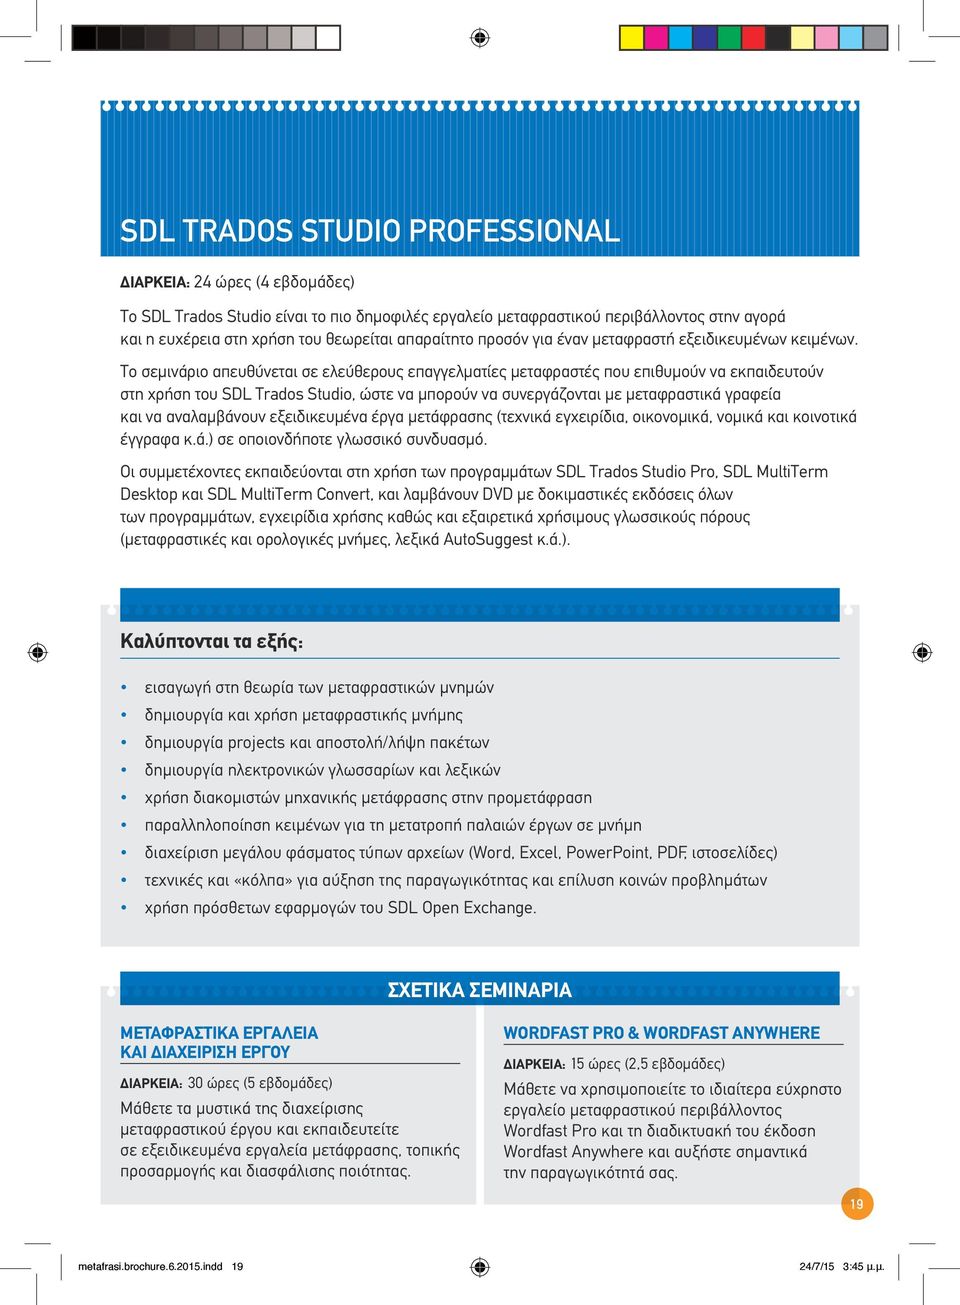 Το σεμινάριο απευθύνεται σε ελεύθερους επαγγελματίες μεταφραστές που επιθυμούν να εκπαιδευτούν στη χρήση του SDL Trados Studio, ώστε να μπορούν να συνεργάζονται με μεταφραστικά γραφεία και να